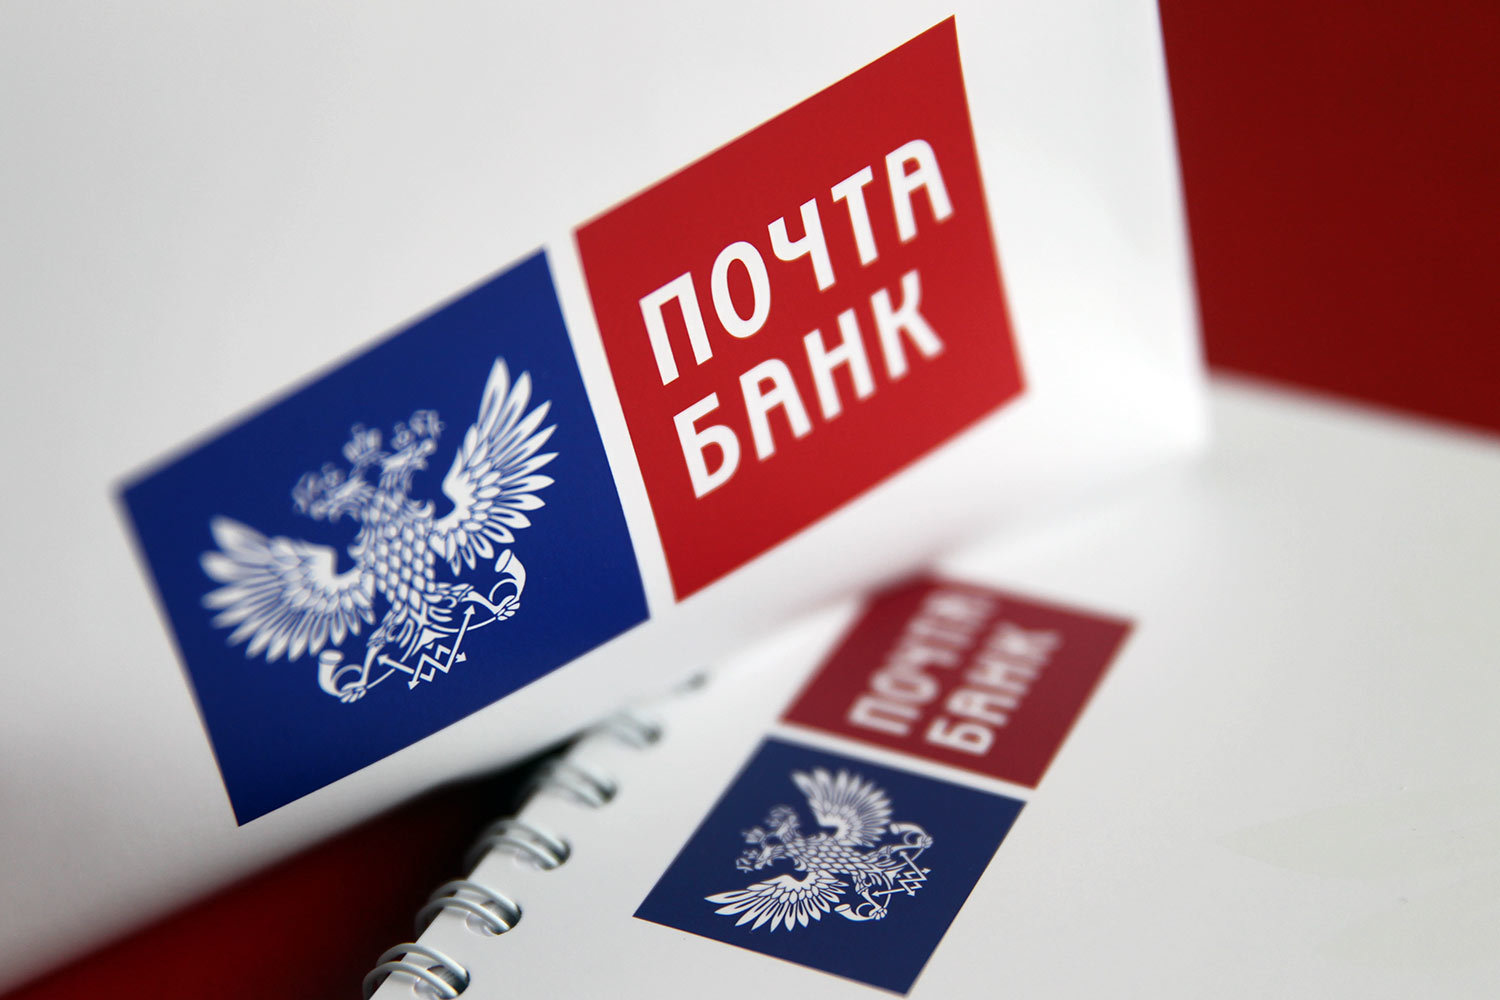 Почта Банк собирается провести розыгрыш около десяти миллионов рублей между клиентами карты «Мир». Как принять участие?